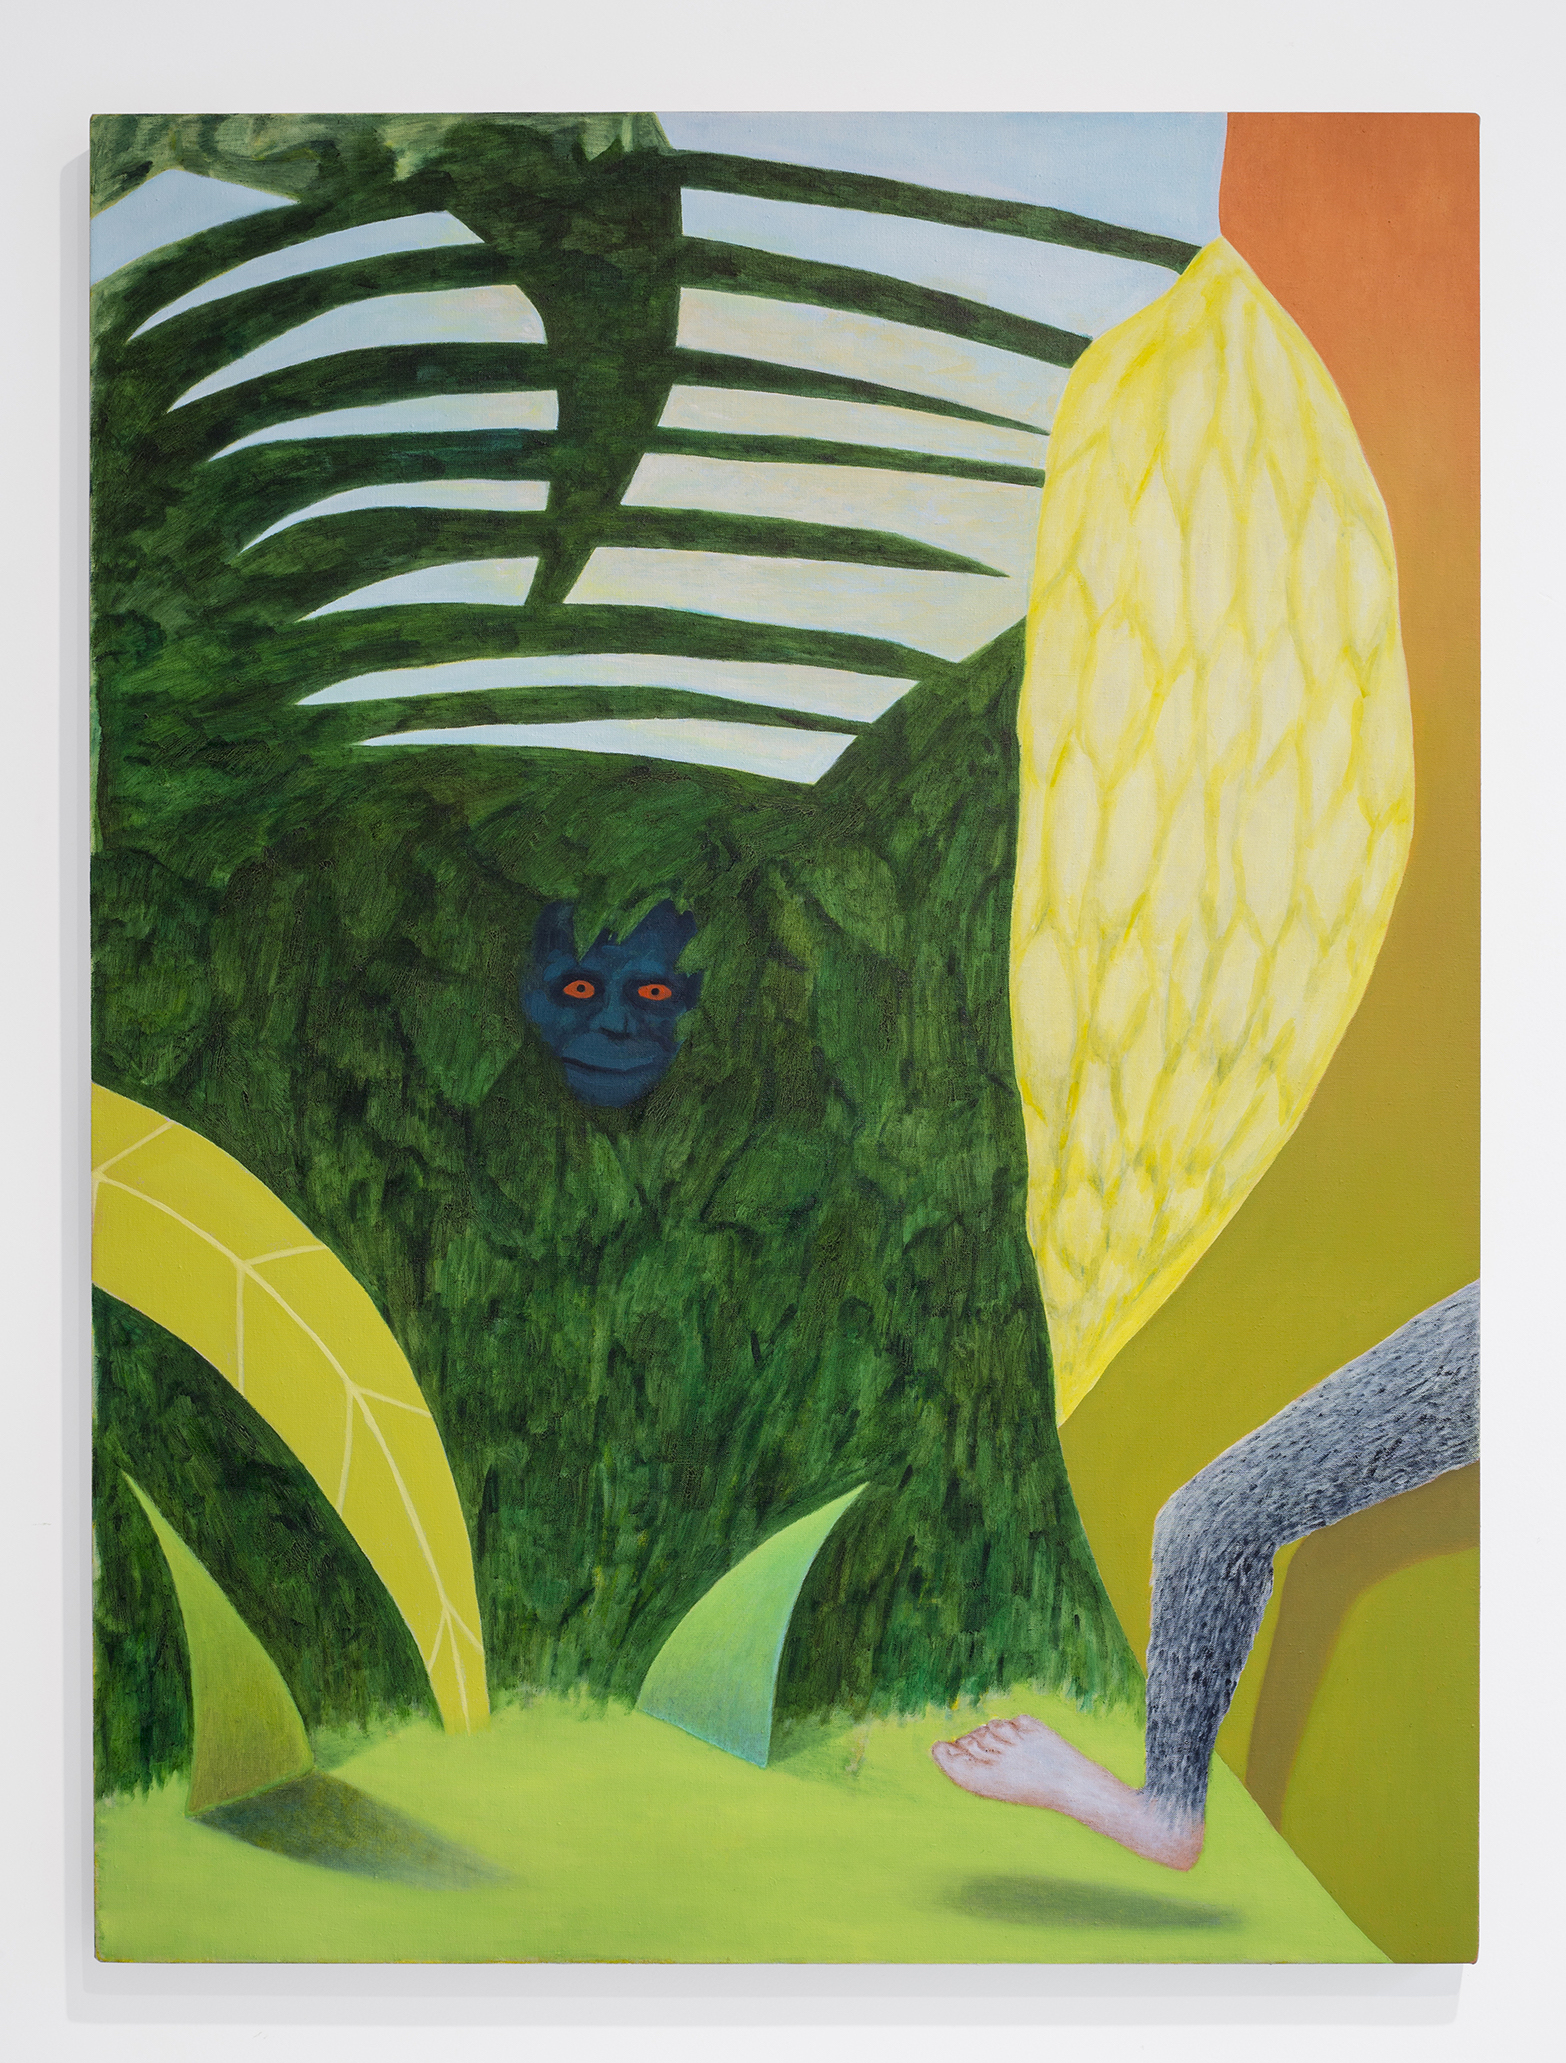 Akira Toxqui, Pata de mono, 2019, pintura acrílica, óleo y lápiz de color sobre lino, 100 x 75 cm. Cortesía de Archivo Colectivo